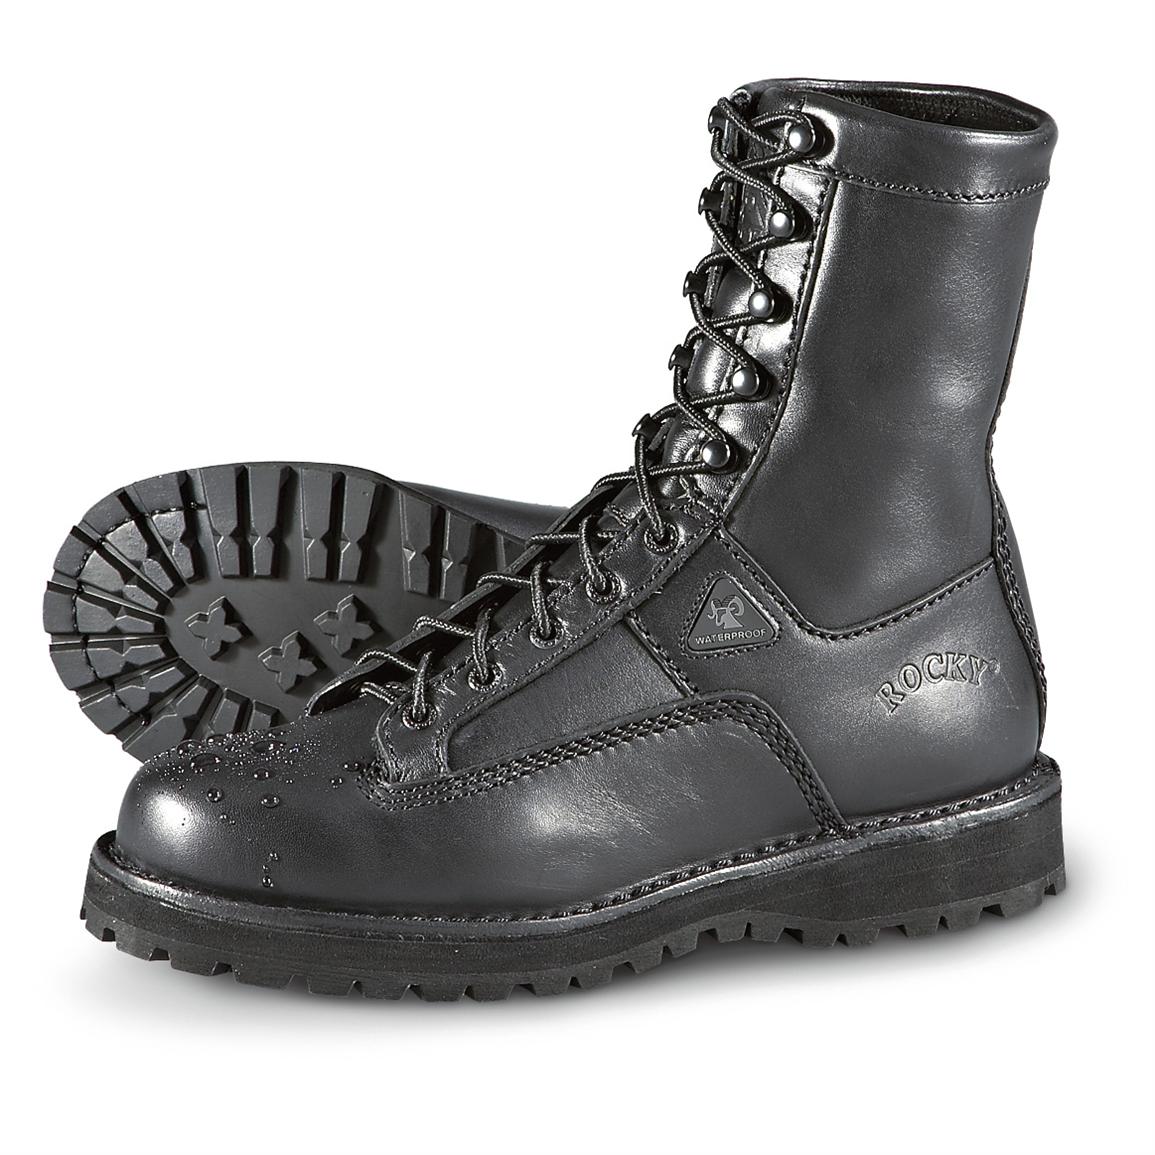 Men's Rocky® Portland Lea Duty Boots, Black - 163959, Combat & Tactical ...